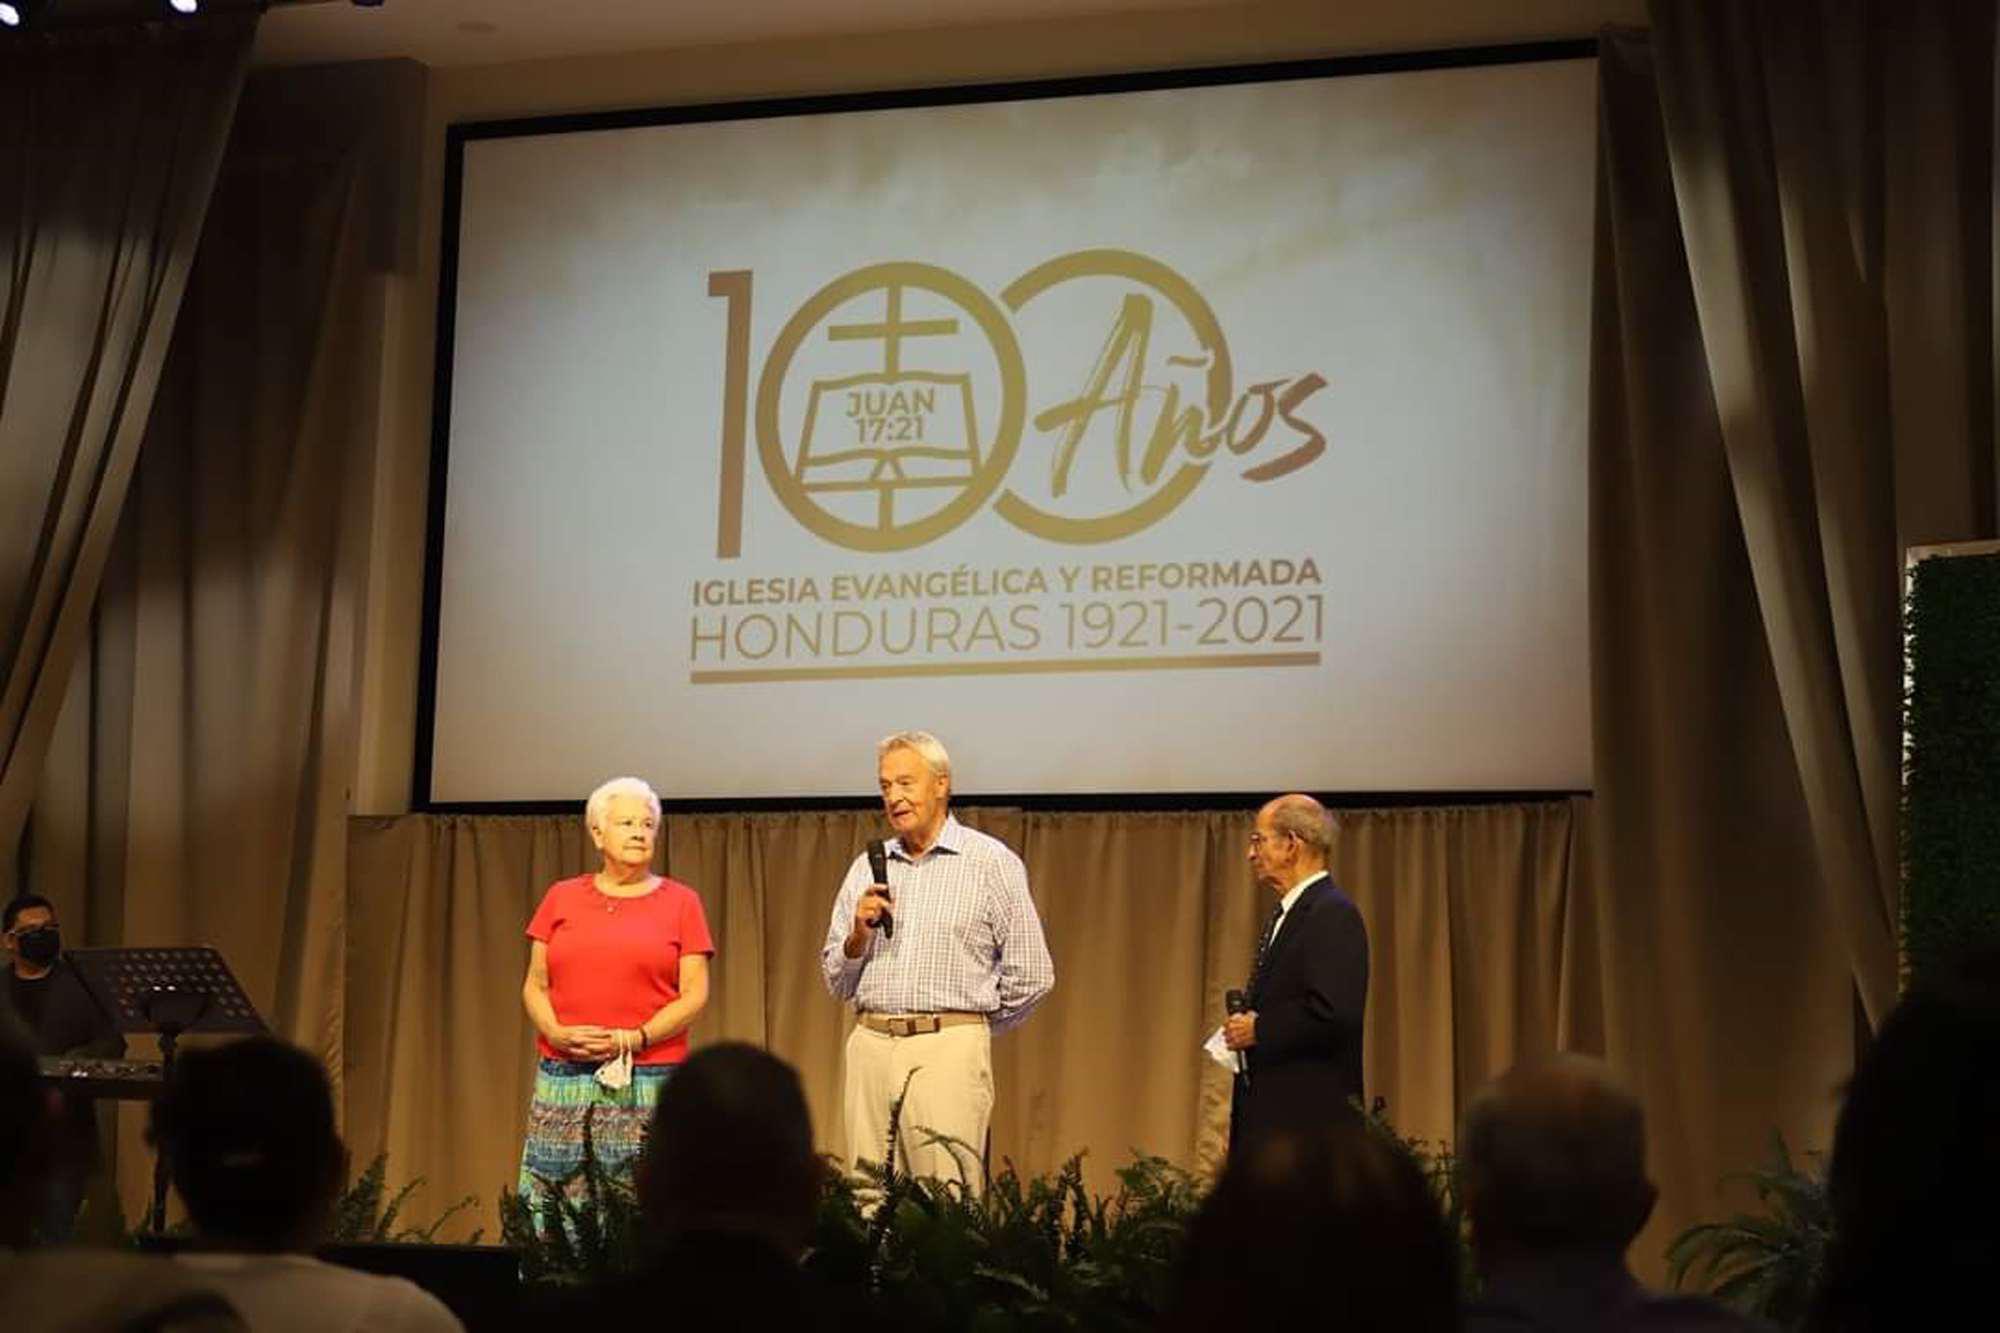 La Iglesia Evangélica y Reformada conmemora 100 años en Honduras